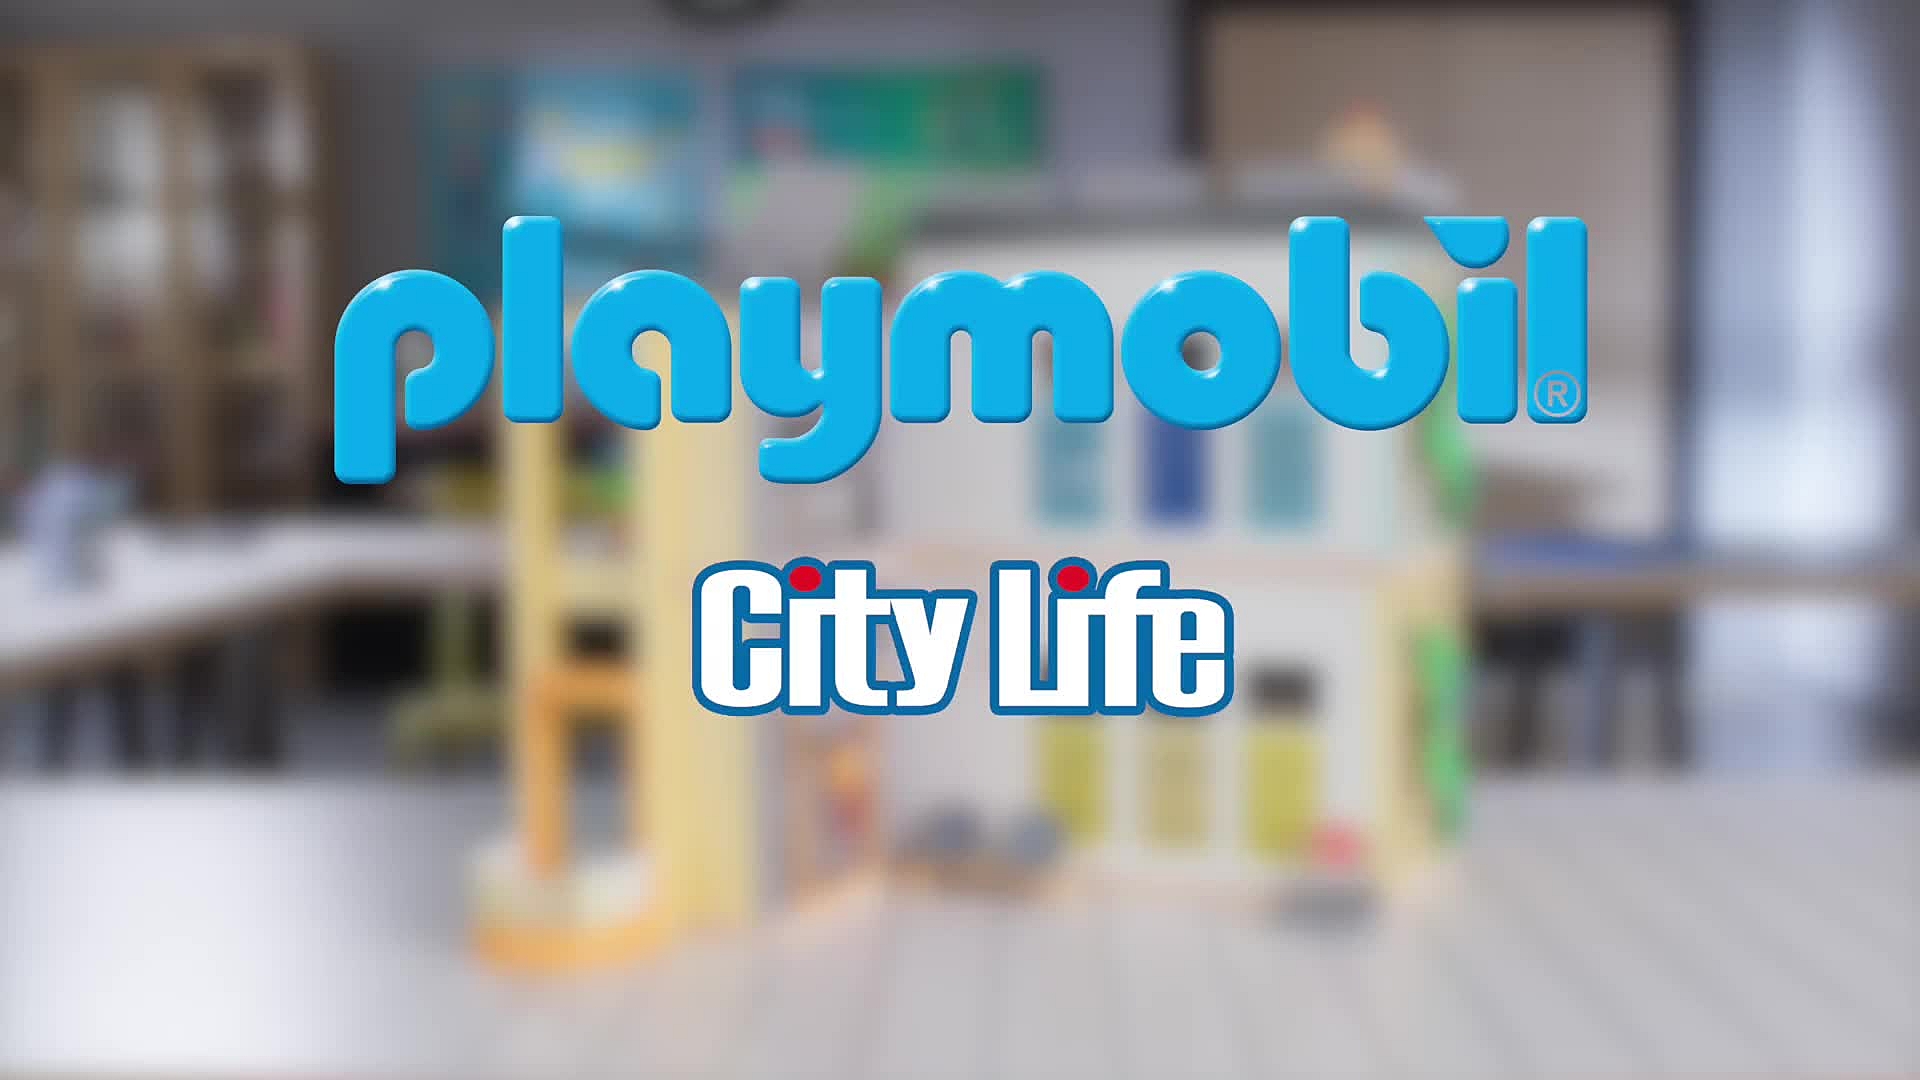 Playmobil City Life: Gimnasio